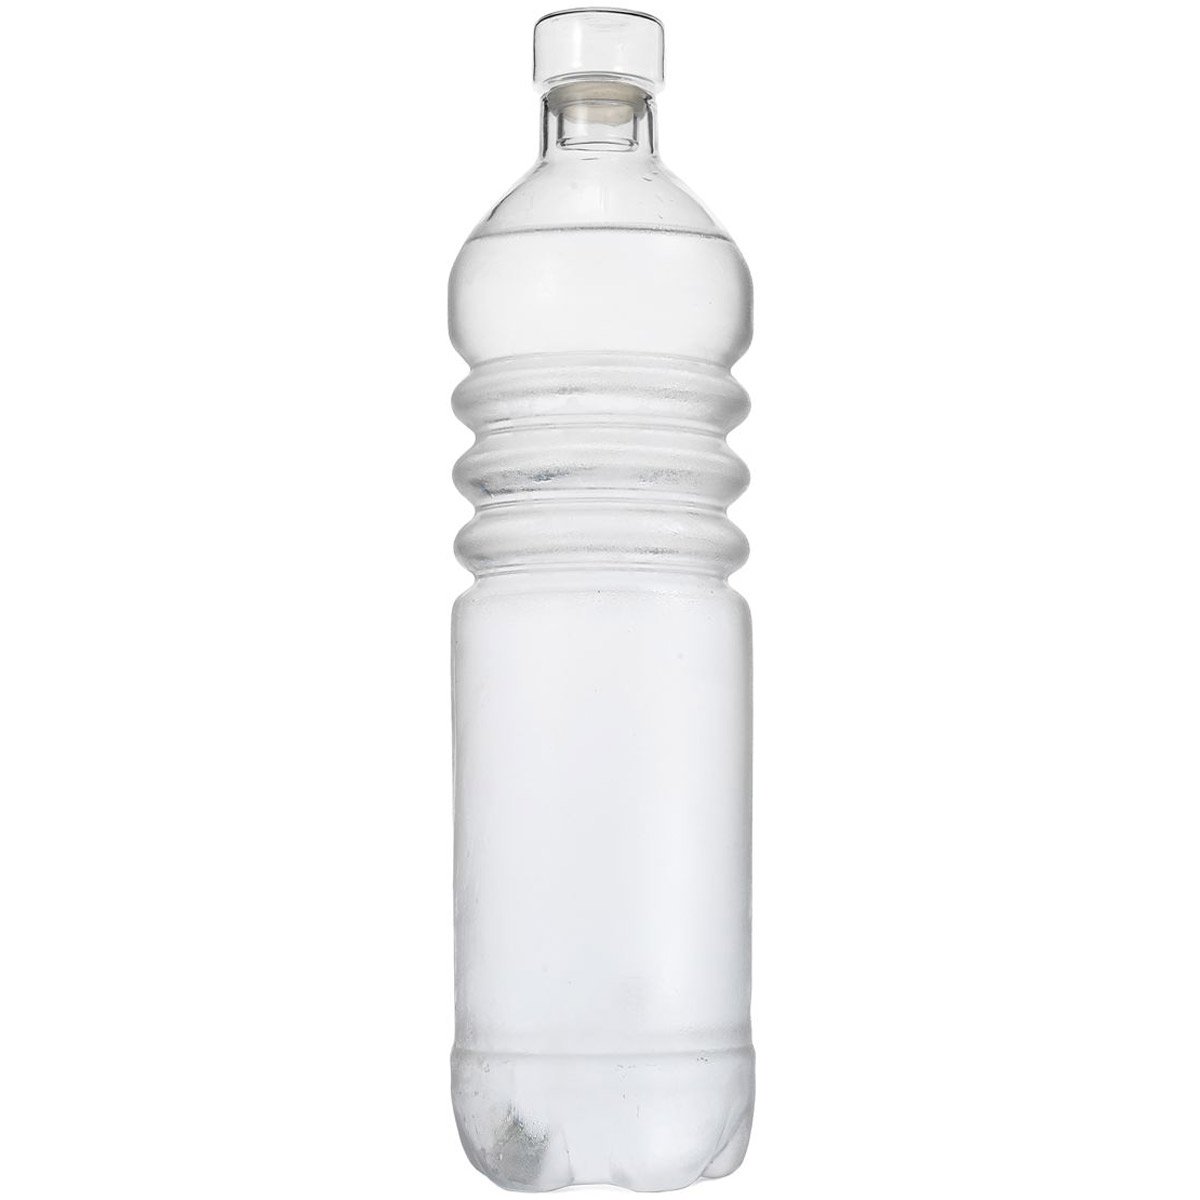 Прозрачные бутылки для воды. Бутылка. Пластиковая бутылка. Пластиковая бутылка для воды 0.5. Прозрачная пластмассовая бутылка для воды.